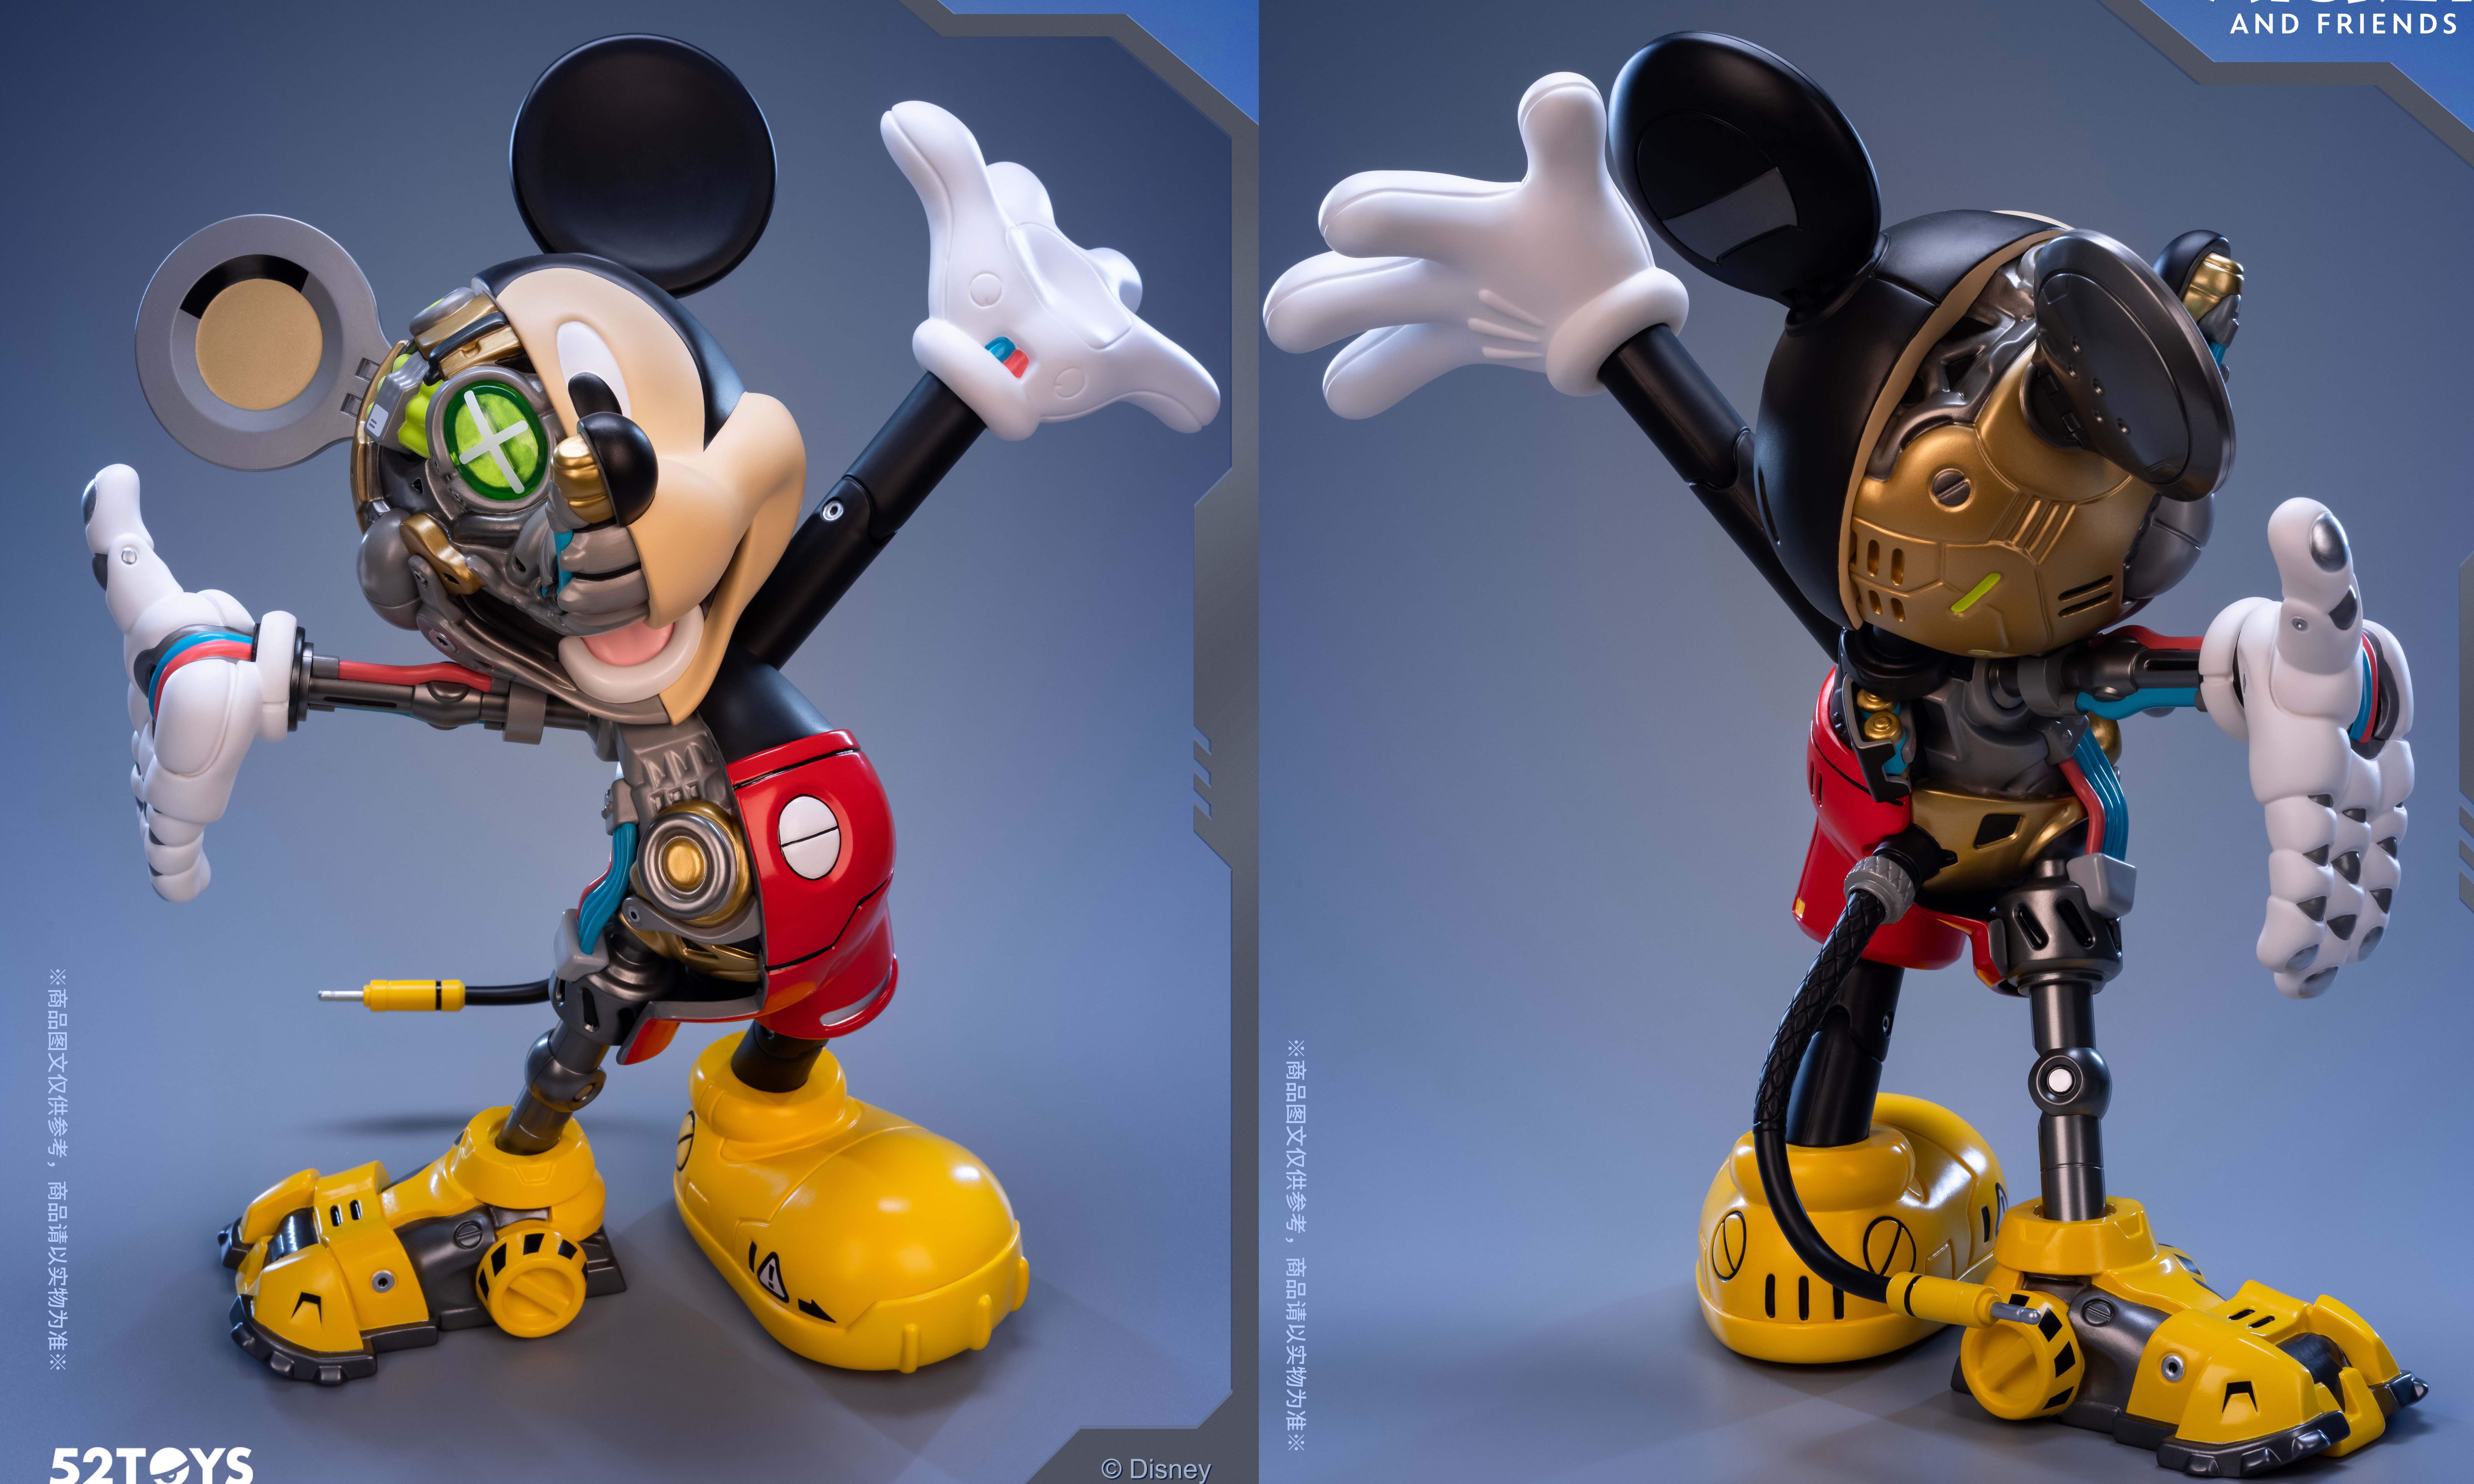 52TOYS x 迪士尼推出「米奇和朋友半机械系列-米奇」潮玩